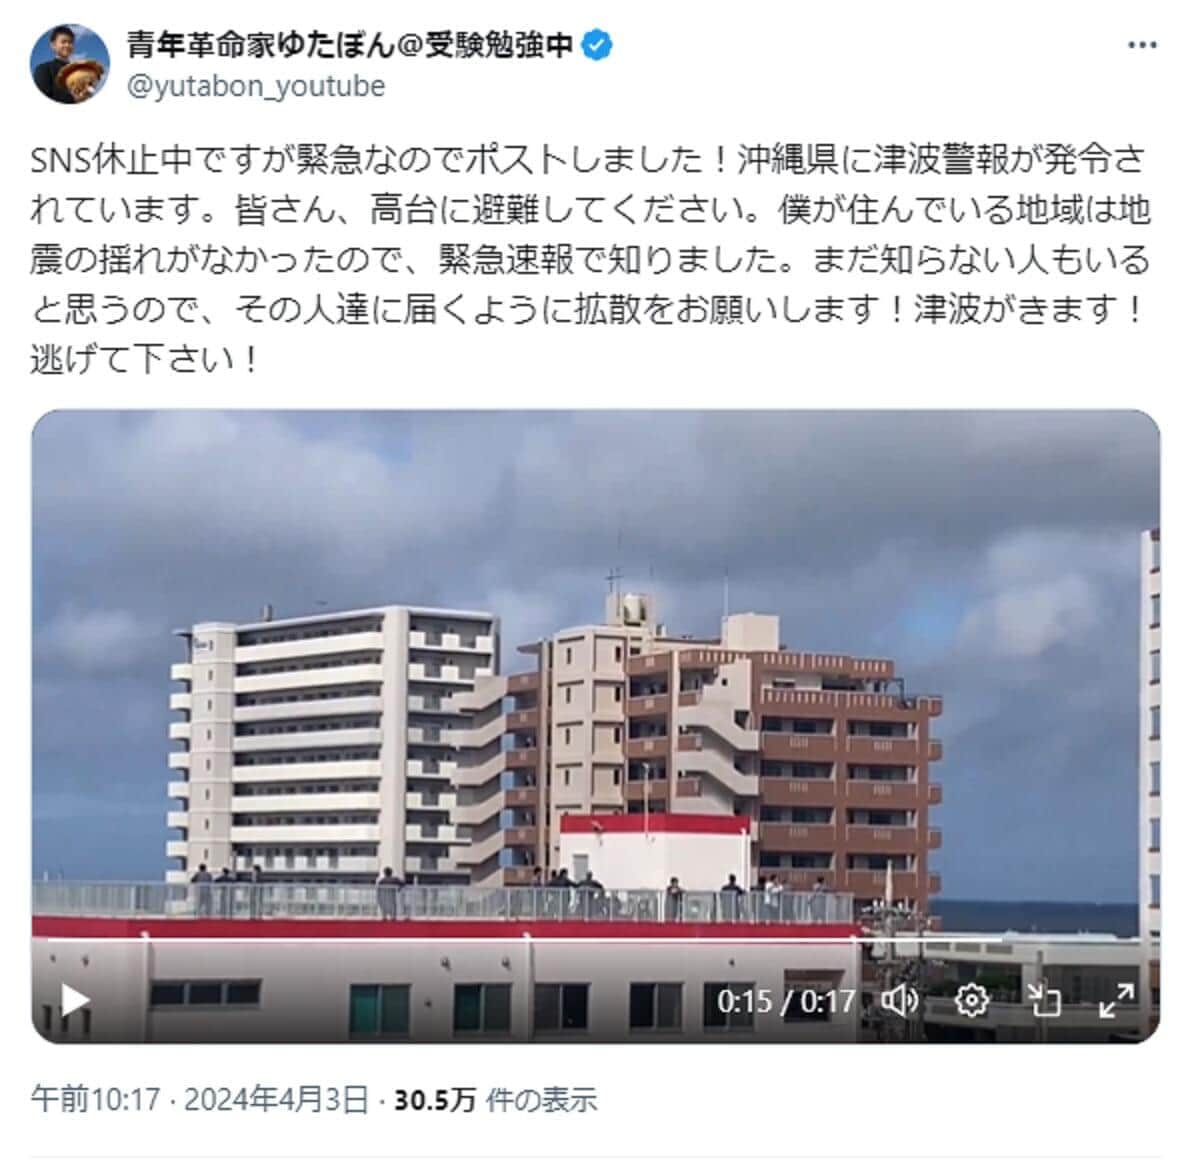 津波警報で沖縄も緊迫、SNS休止中「ゆたぼん」も避難呼びかけ　注意報経て正午には解除